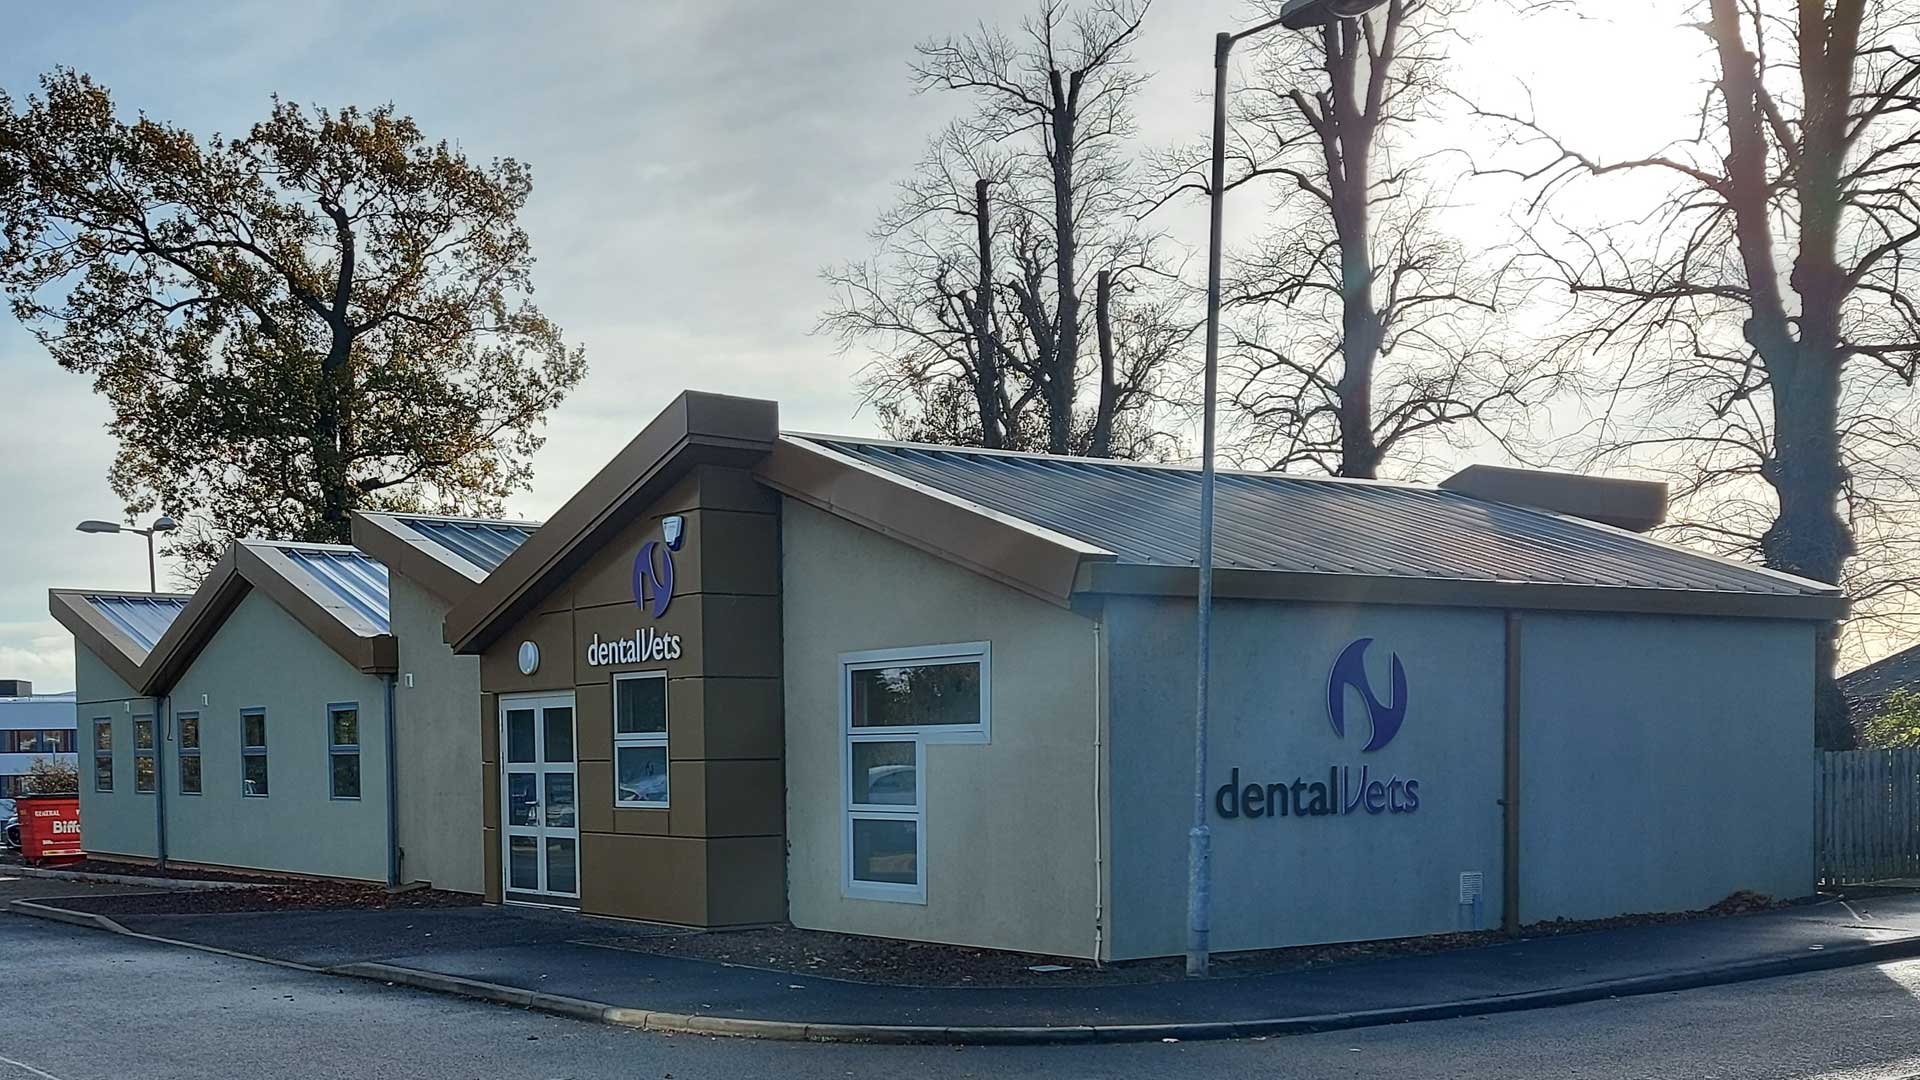 (c) Dentalvets.co.uk